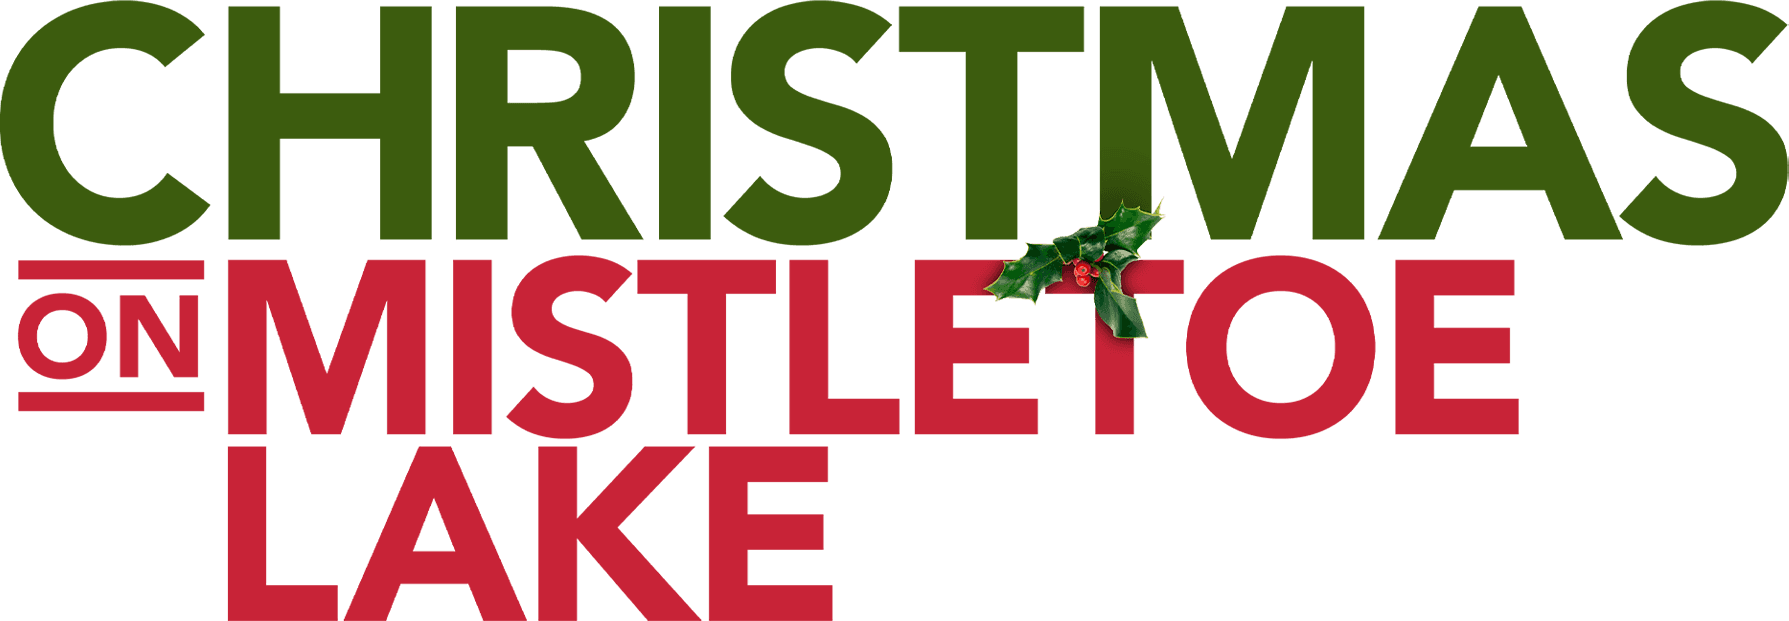 Christmas on Mistletoe Lake logo